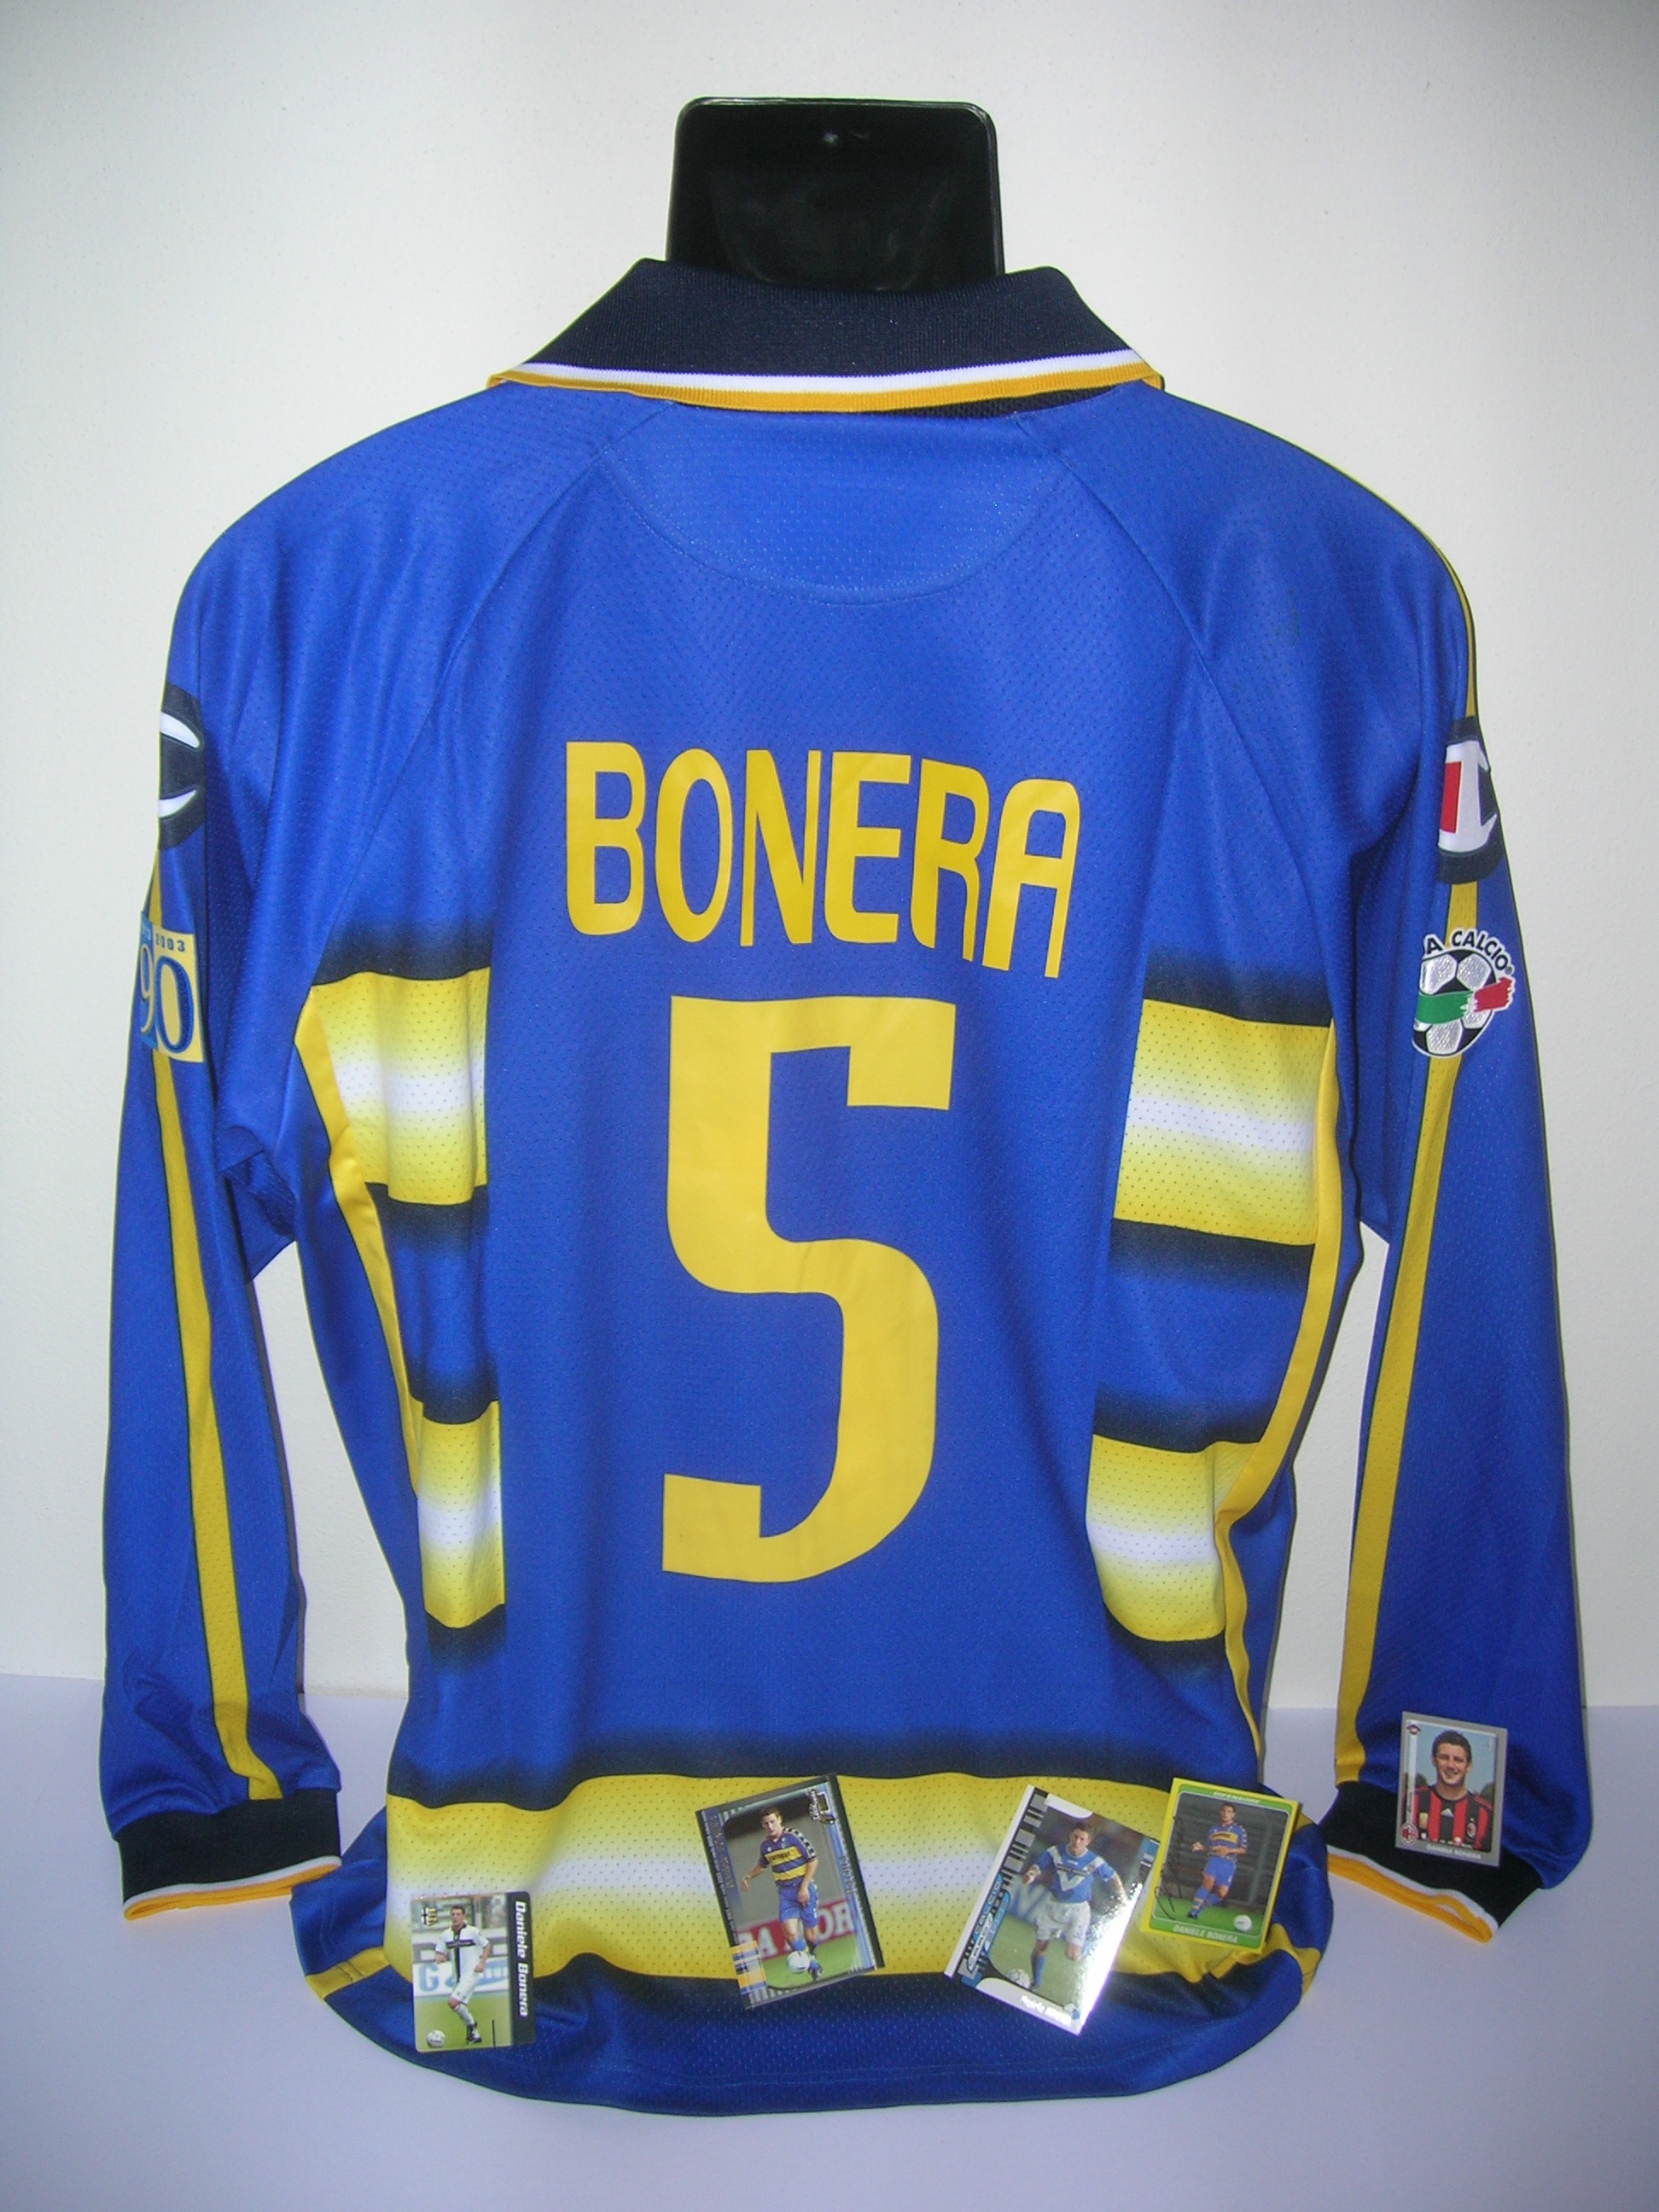 Parma  Bonera  5  A-2